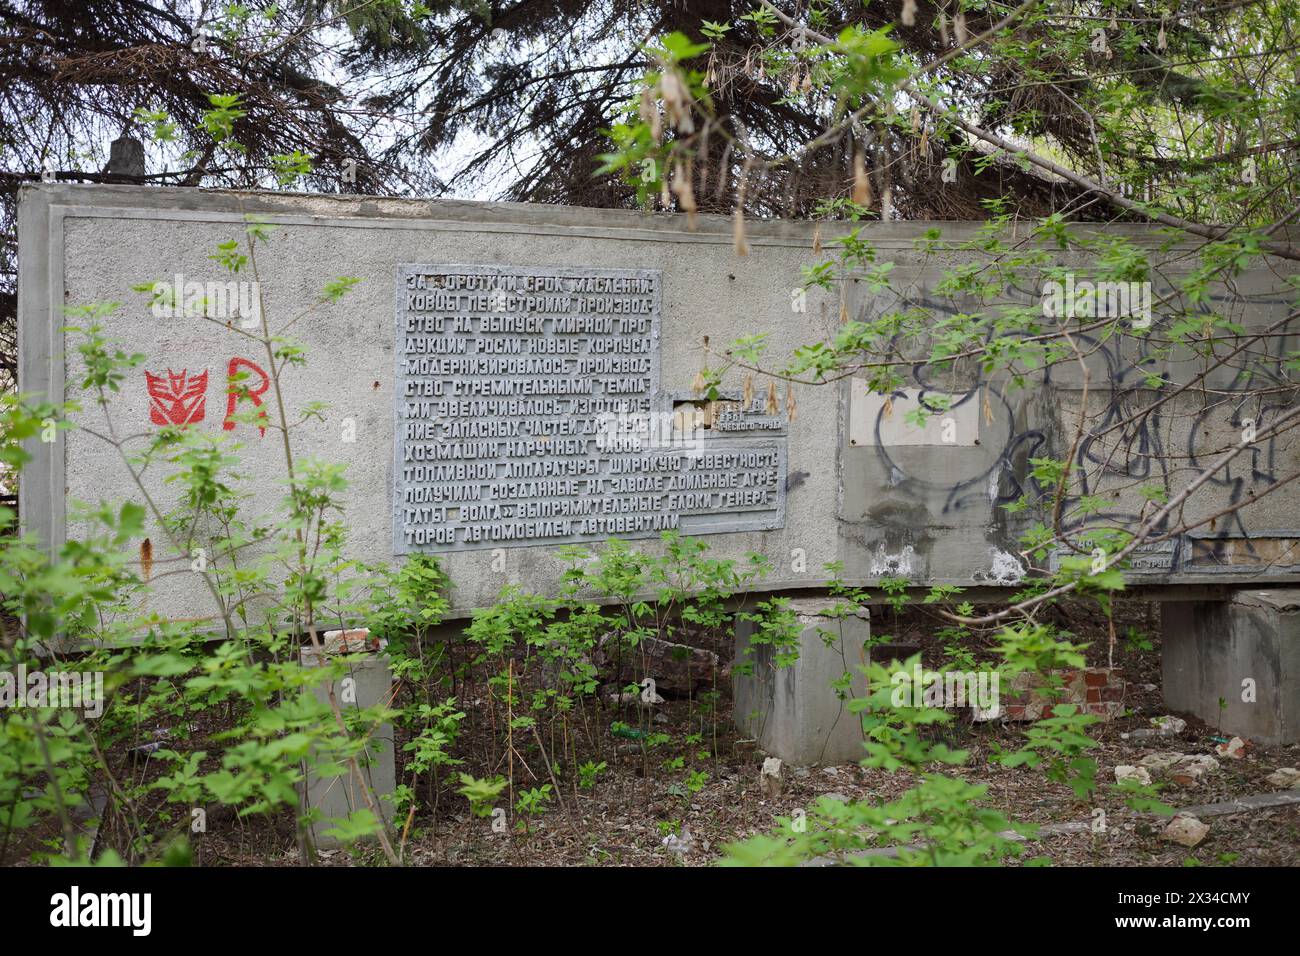 SAMARA, RUSSIE - 5 mai 2015 : vieux tableau mémorable dans l'usine abandonnée de Maslennikov - usine de défense à Samara, qui existait en 1909-1990, produisant comp Banque D'Images